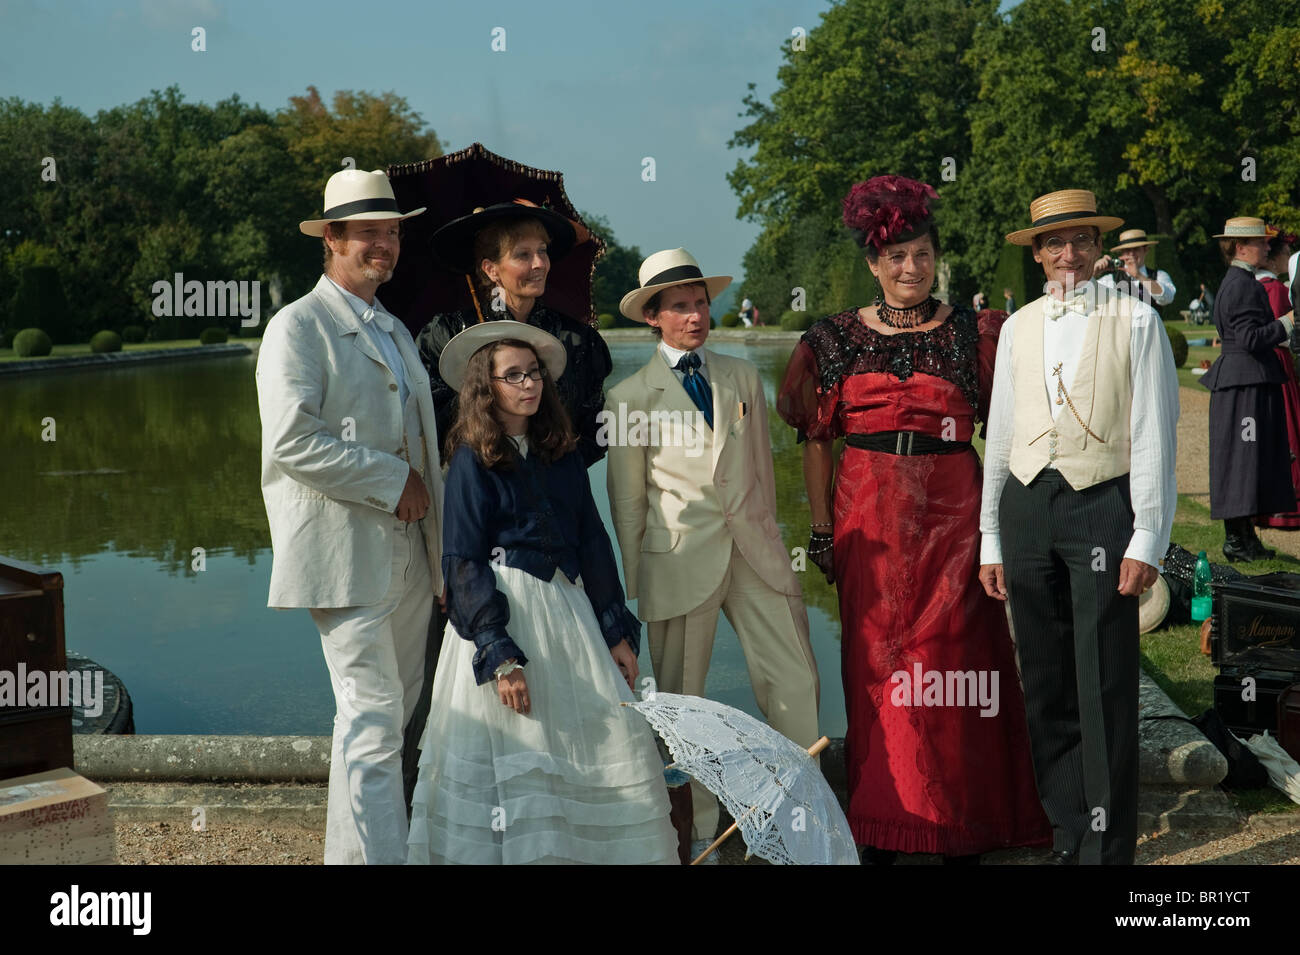 Viktorianische Frau in Frankreich – Erwachsene Gruppe, „Chateau de Breteuil“ Choisel, Familien in historischen Kostümen, Posen in schickem Kleid, bei Tanzball-Event PATRIMOINE JOURNEES, Retro Youth Stockfoto